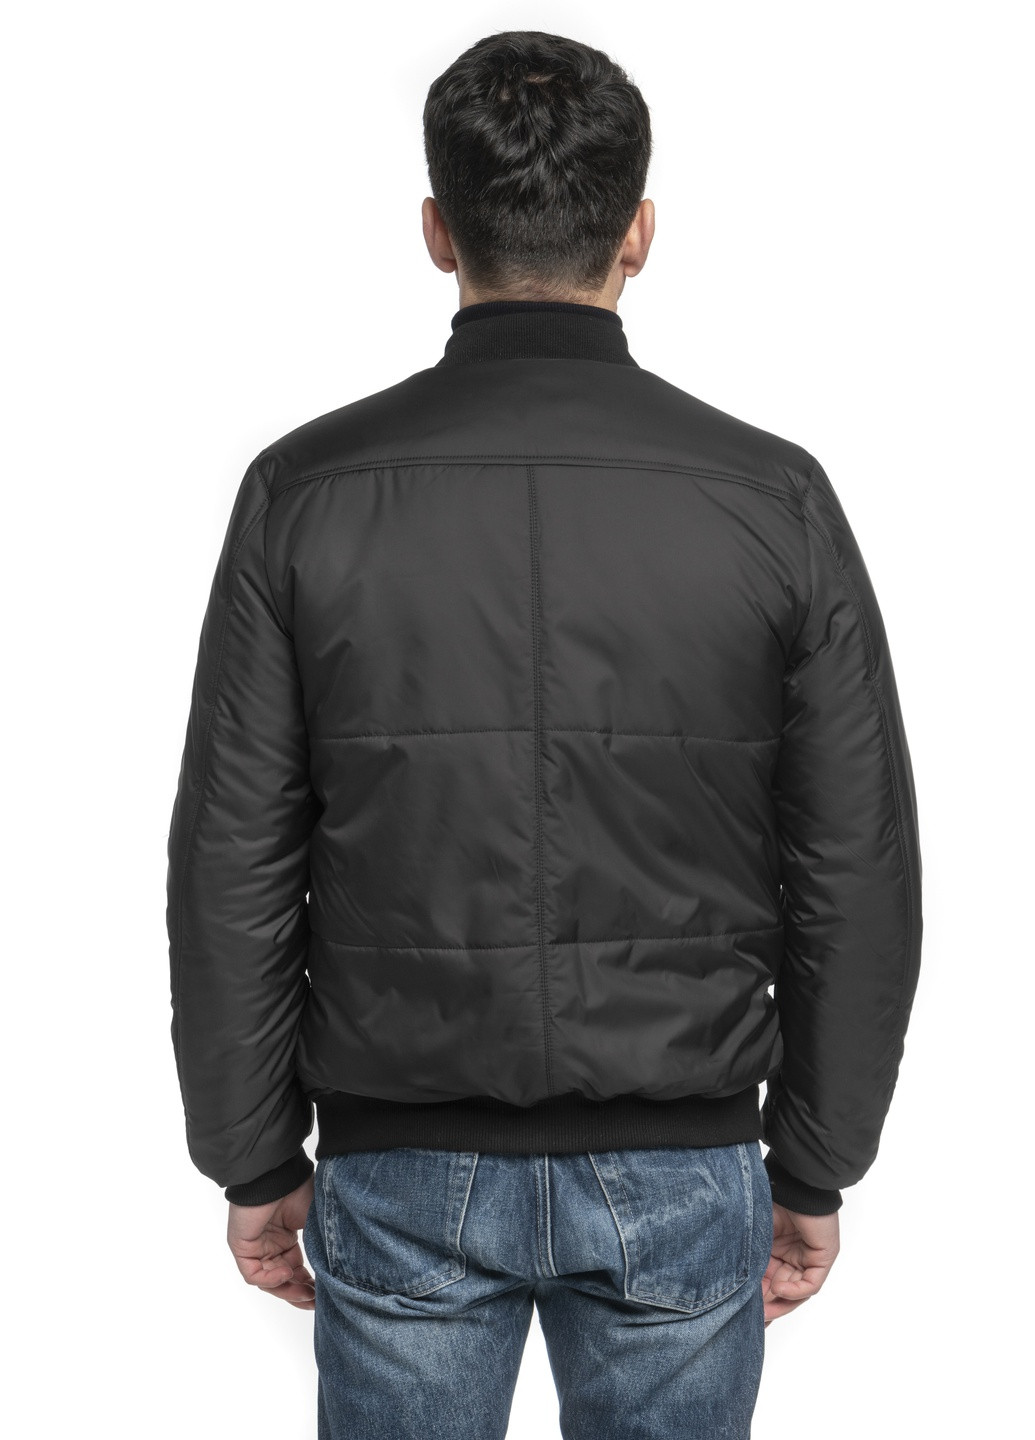 Черная демисезонная куртки демисезонные мужские от производителя бренд dv-men's SK